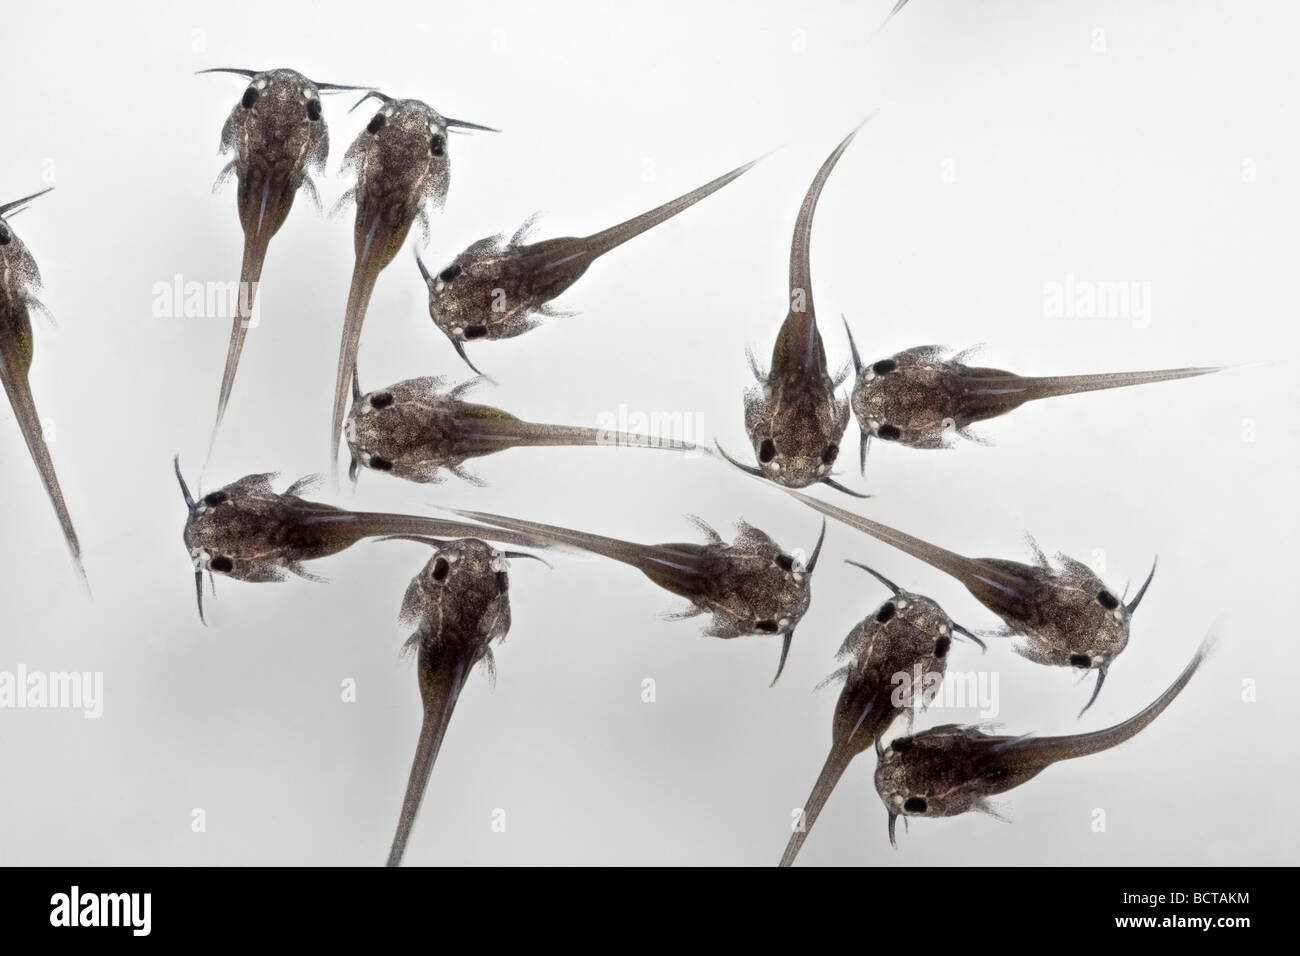 Avannotti di pesce gatto (Ictalurus melas). Avannotti de poisson-chat (Ictalurus melas). Foto Stock